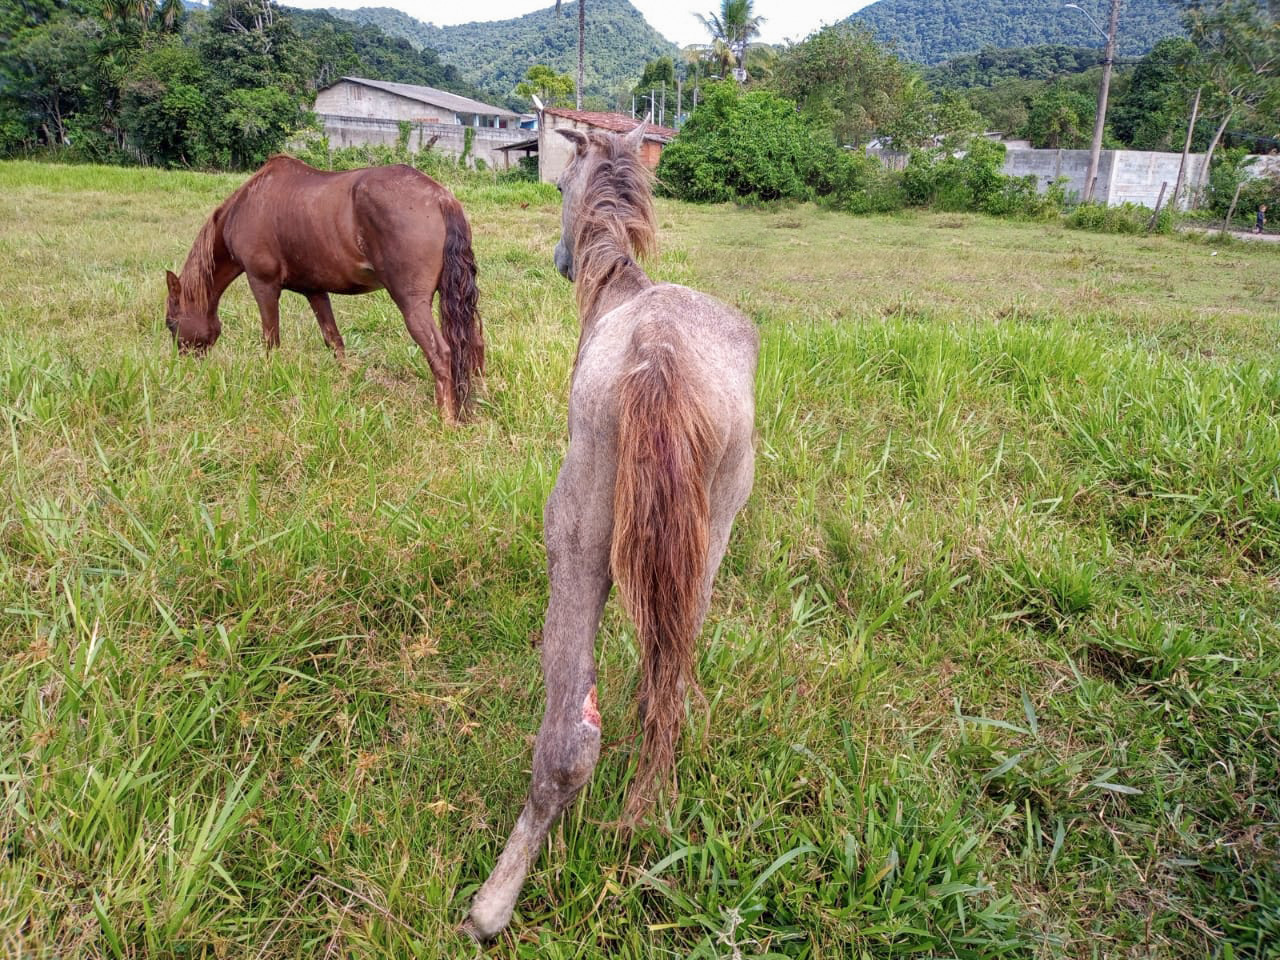 Cavalo é resgatado em situação de maus tratos, em Caraguatatuba